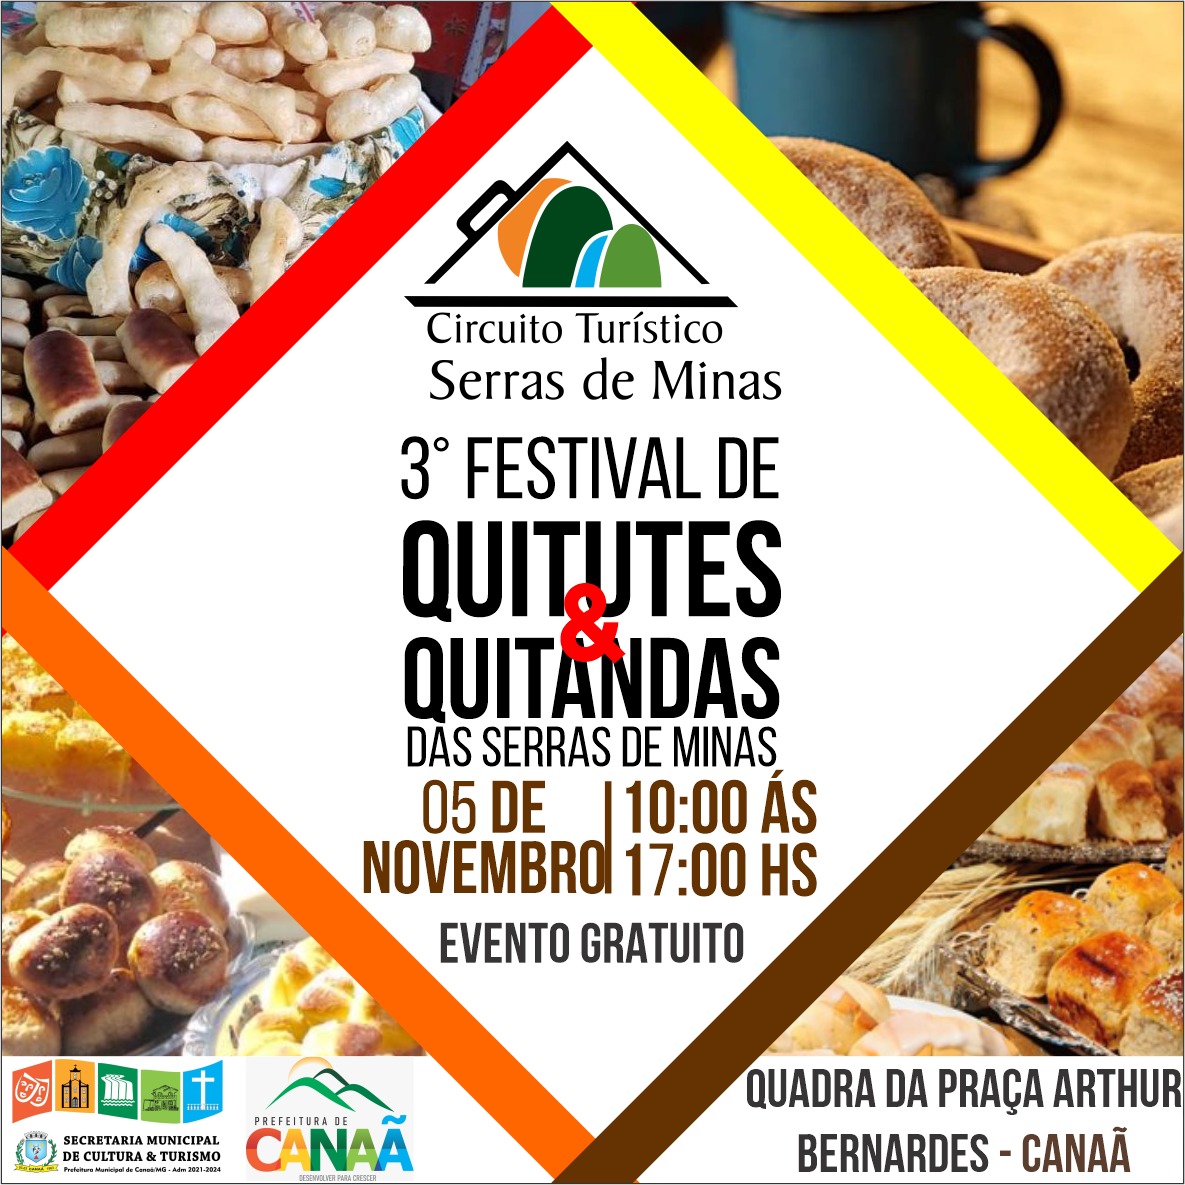  3ª edição do Festival de Quitutes e Quitandas das